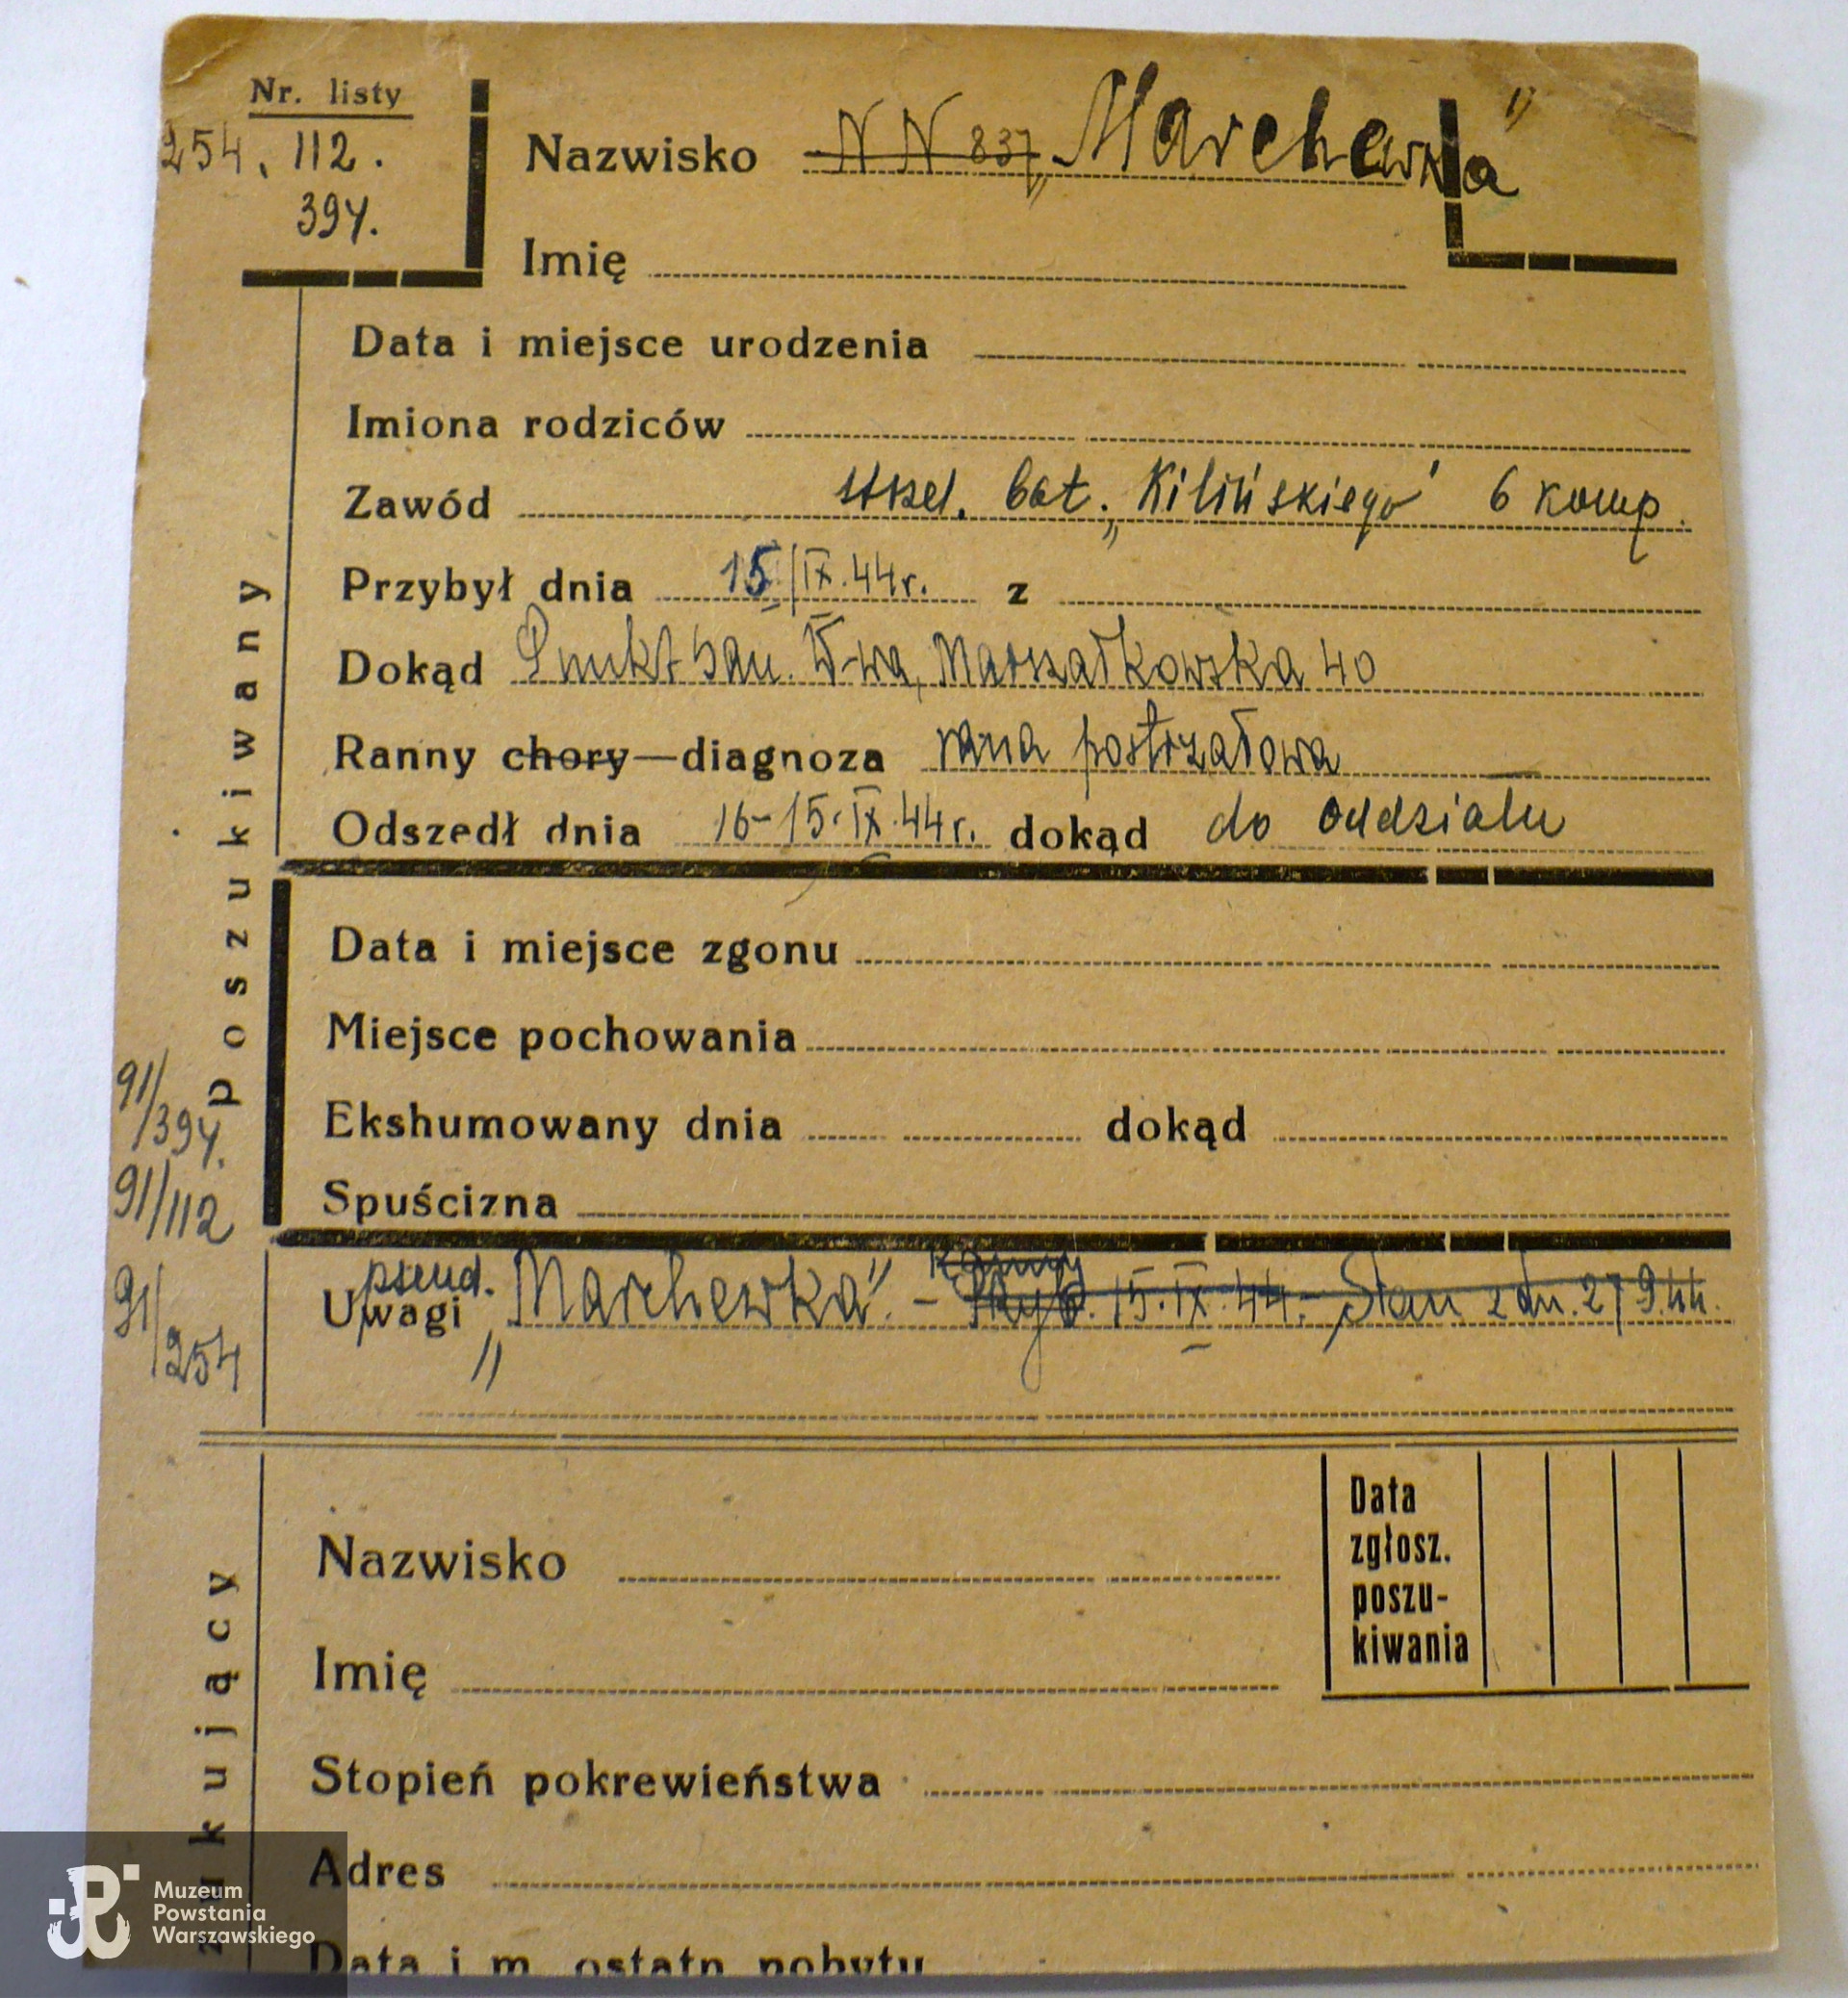 PCK - kartoteka - zapis dotyczy  żołnierza  bat. Kiliński ps. Marchewka, rannego 15 września 1944 r.  (rana postrzałowa), opatrzonego w punkcie sanitarnym Marszałkowska 40. Porównaj także biogram: strz. Tadeusz Szuliński  ps. Marchewka - batalion "Kiliński" - 6. kompania   